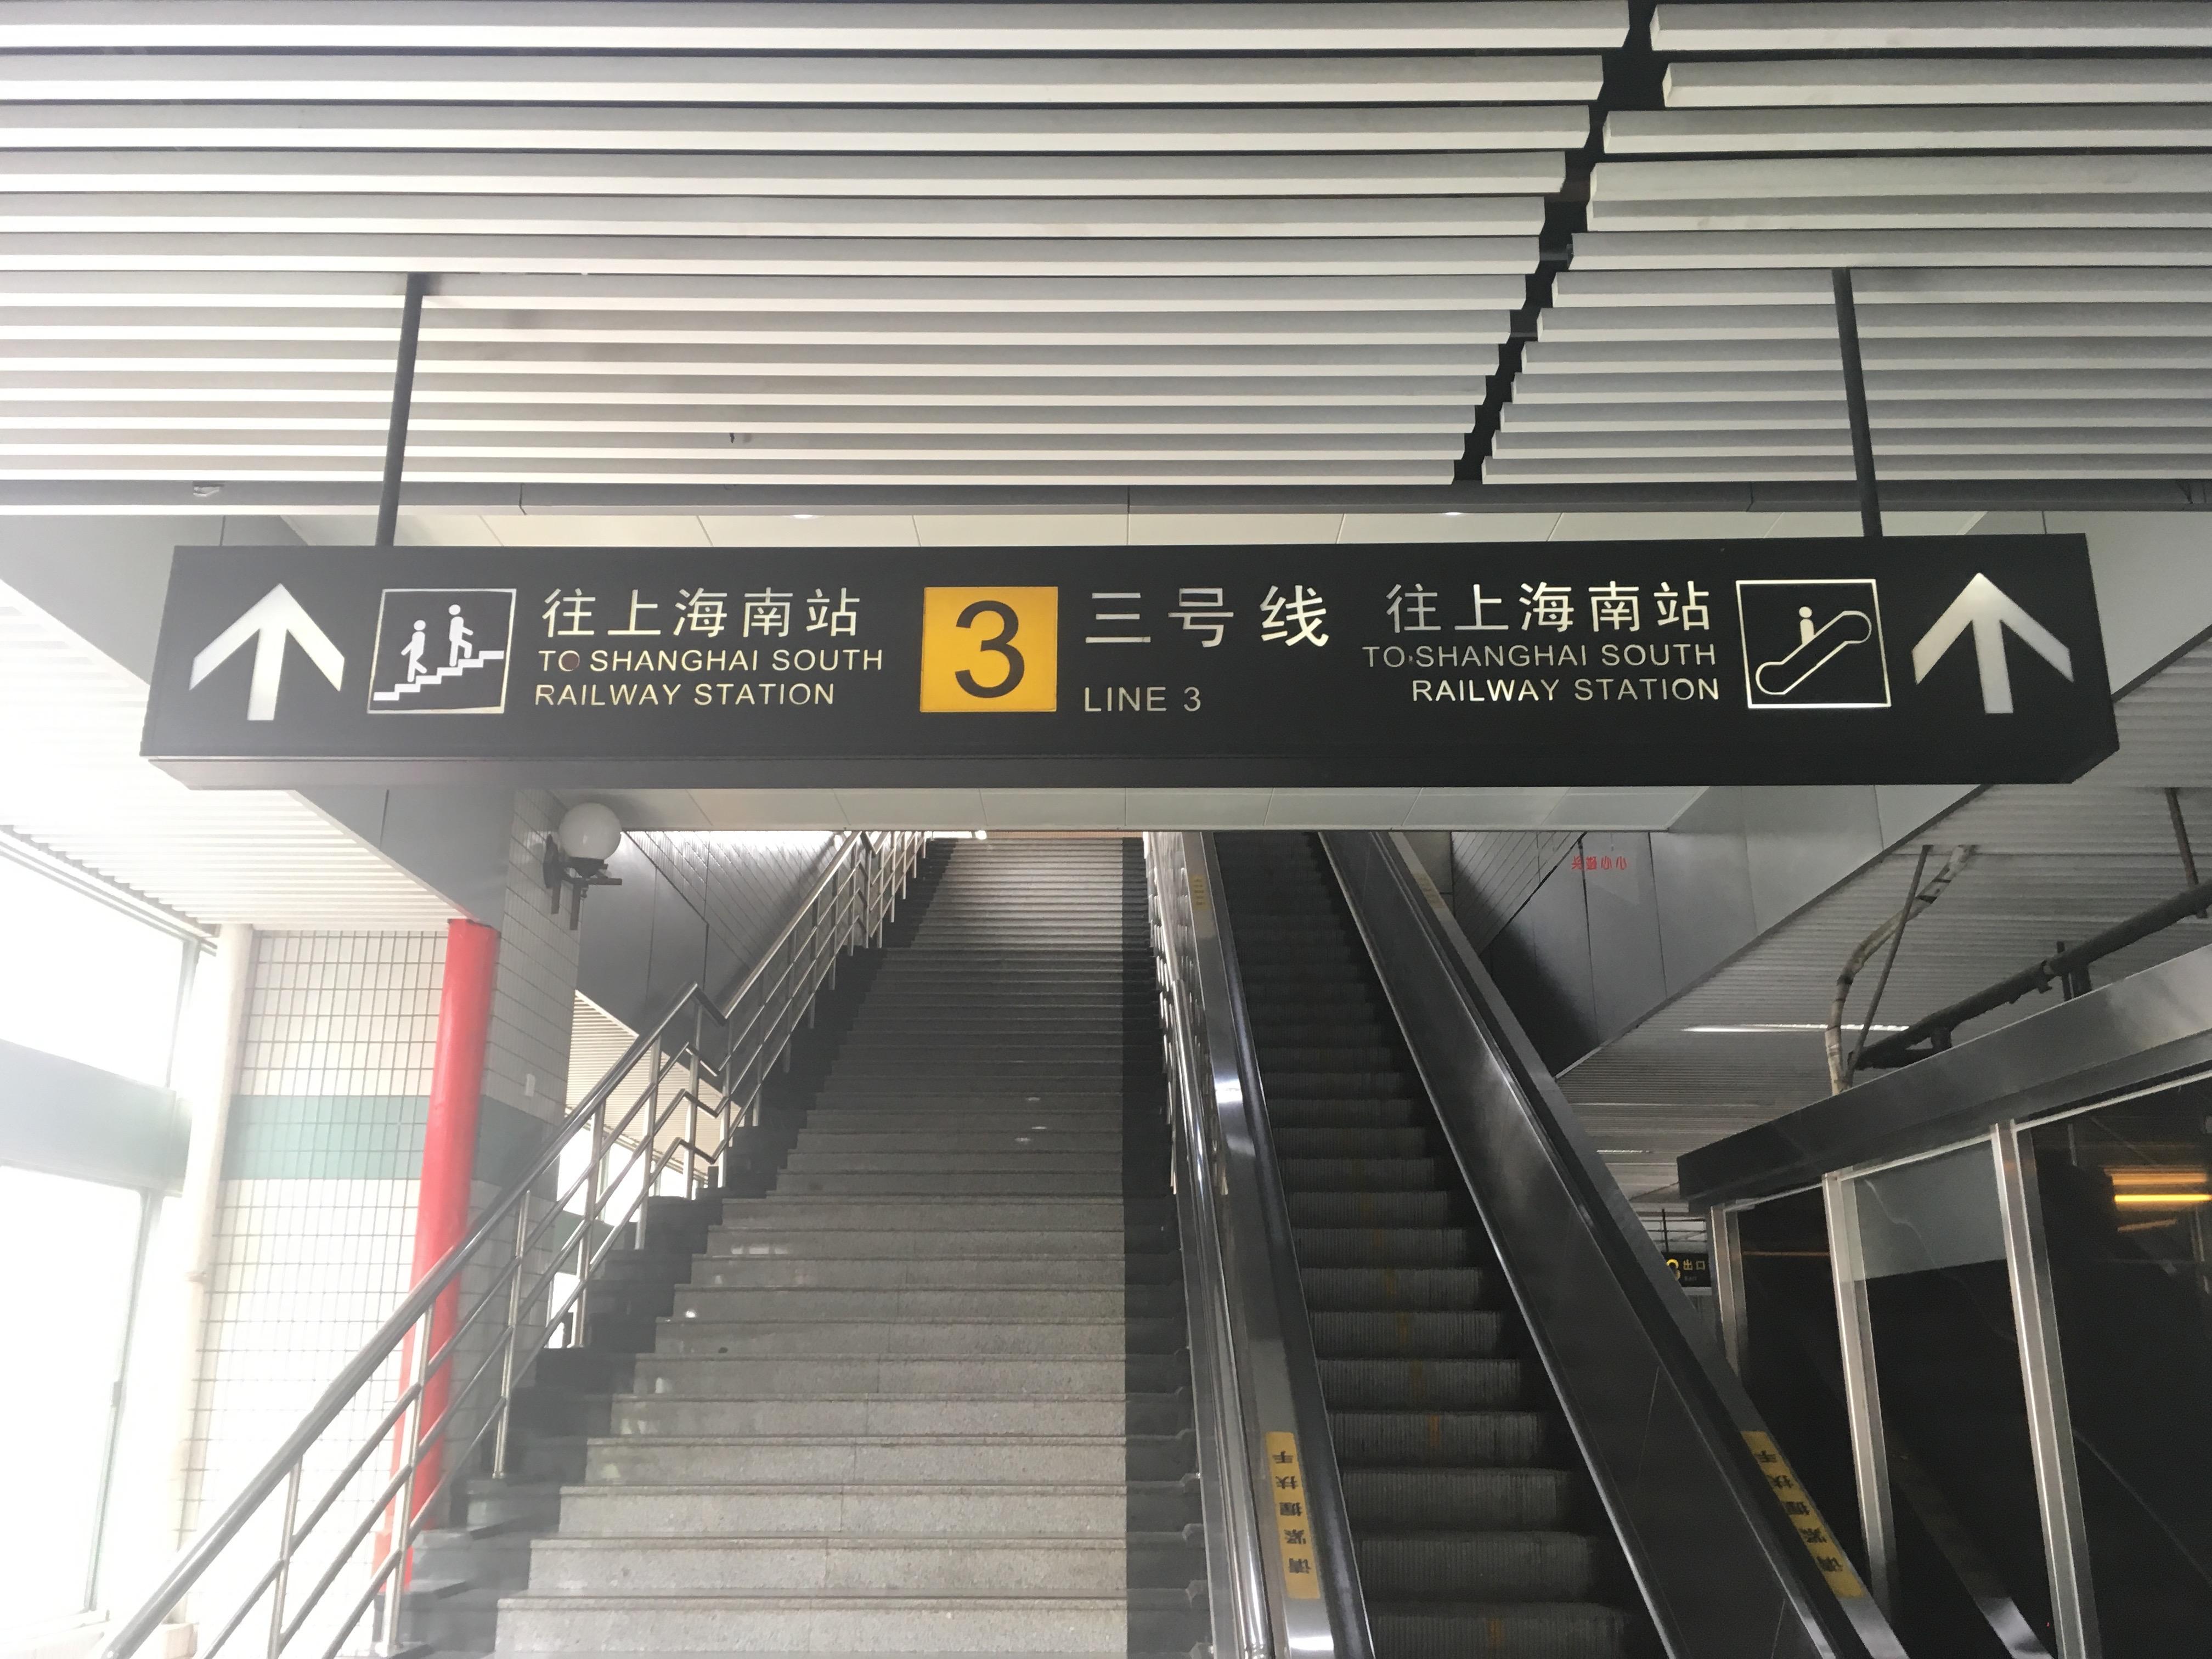 自动扶梯 - 北京首力电梯有限公司 官网